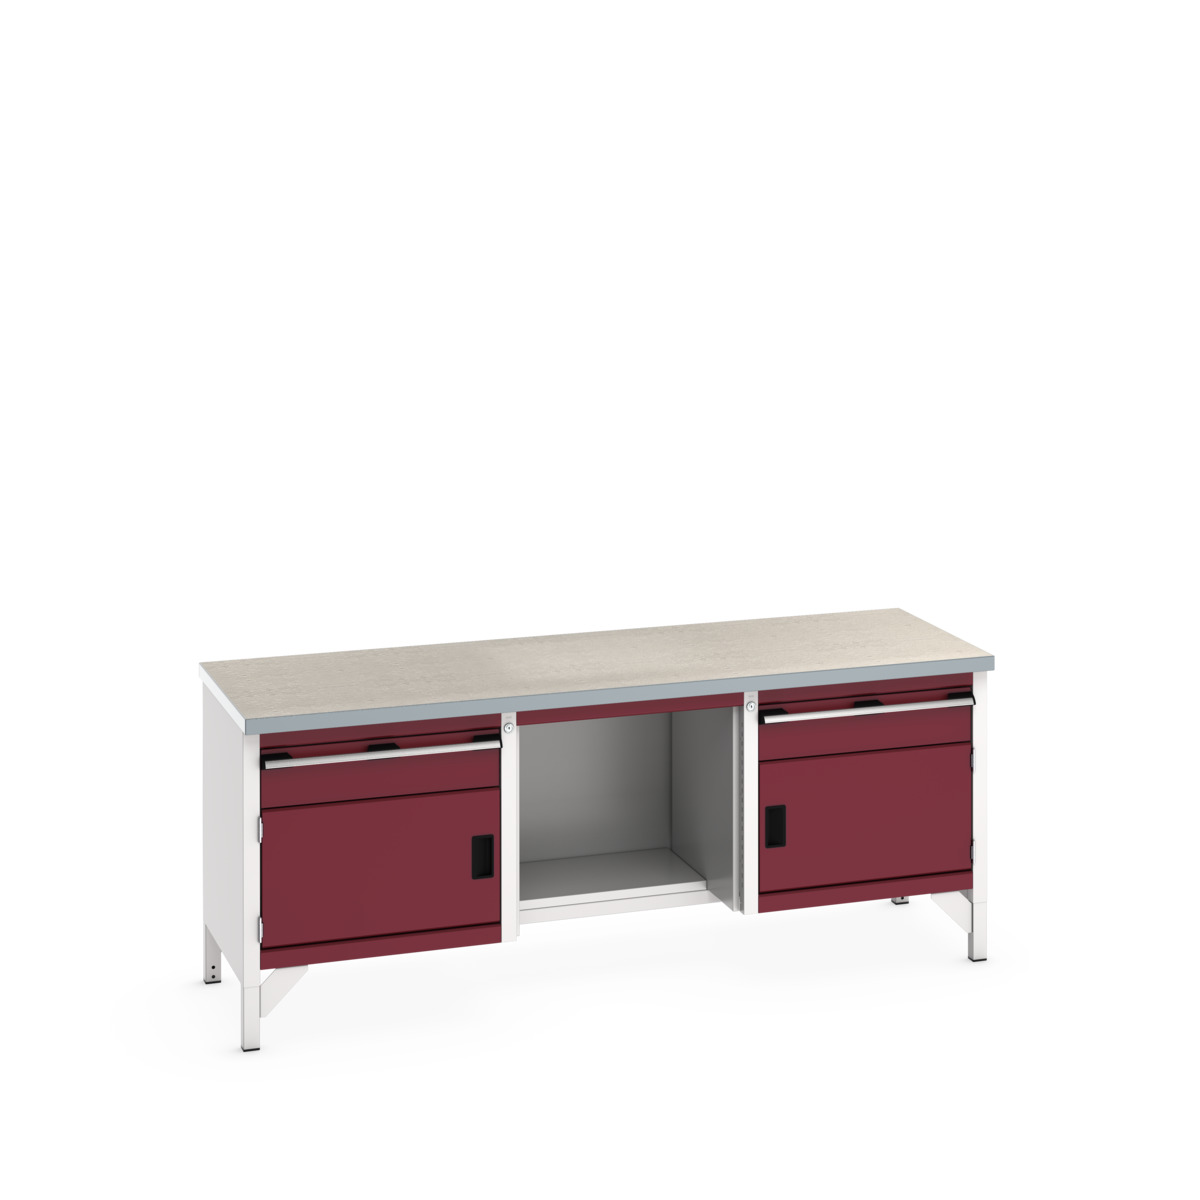 41002069.24V - cubio storage bench (lino)